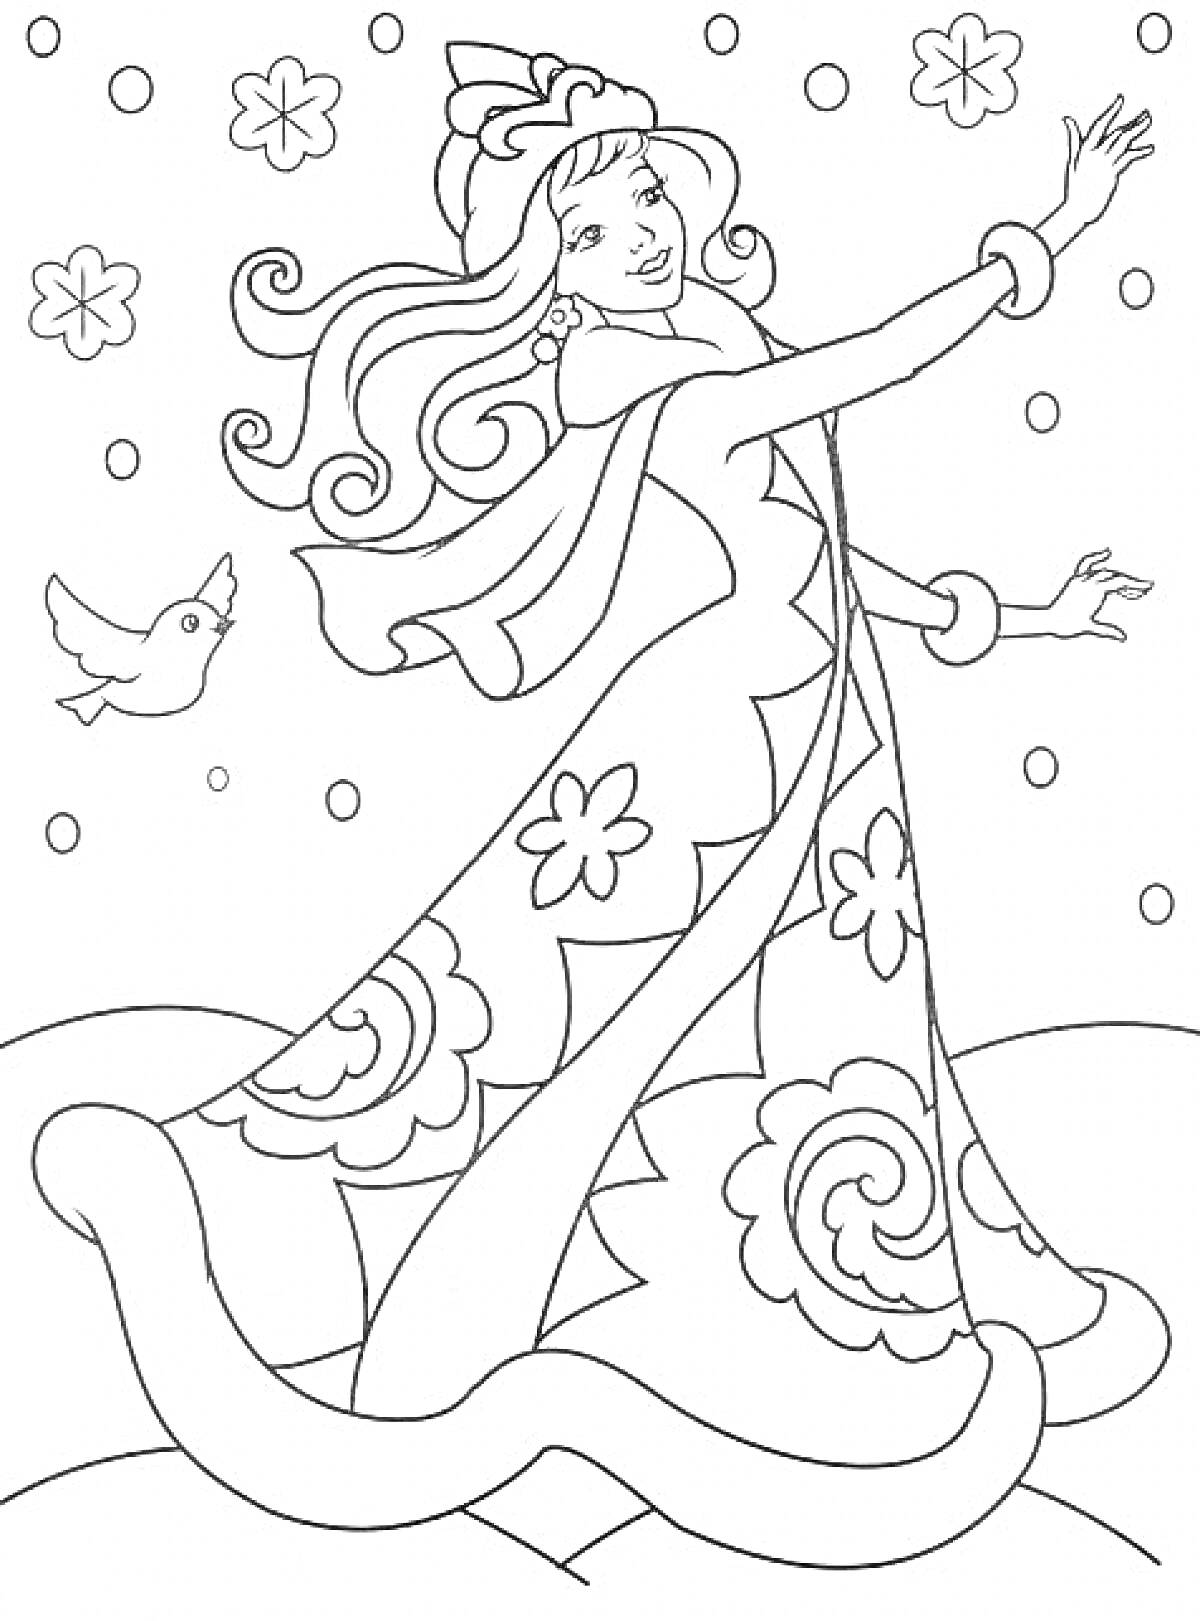 Раскраска Снежная девушка с птицей и снежинками на фоне падающего снега